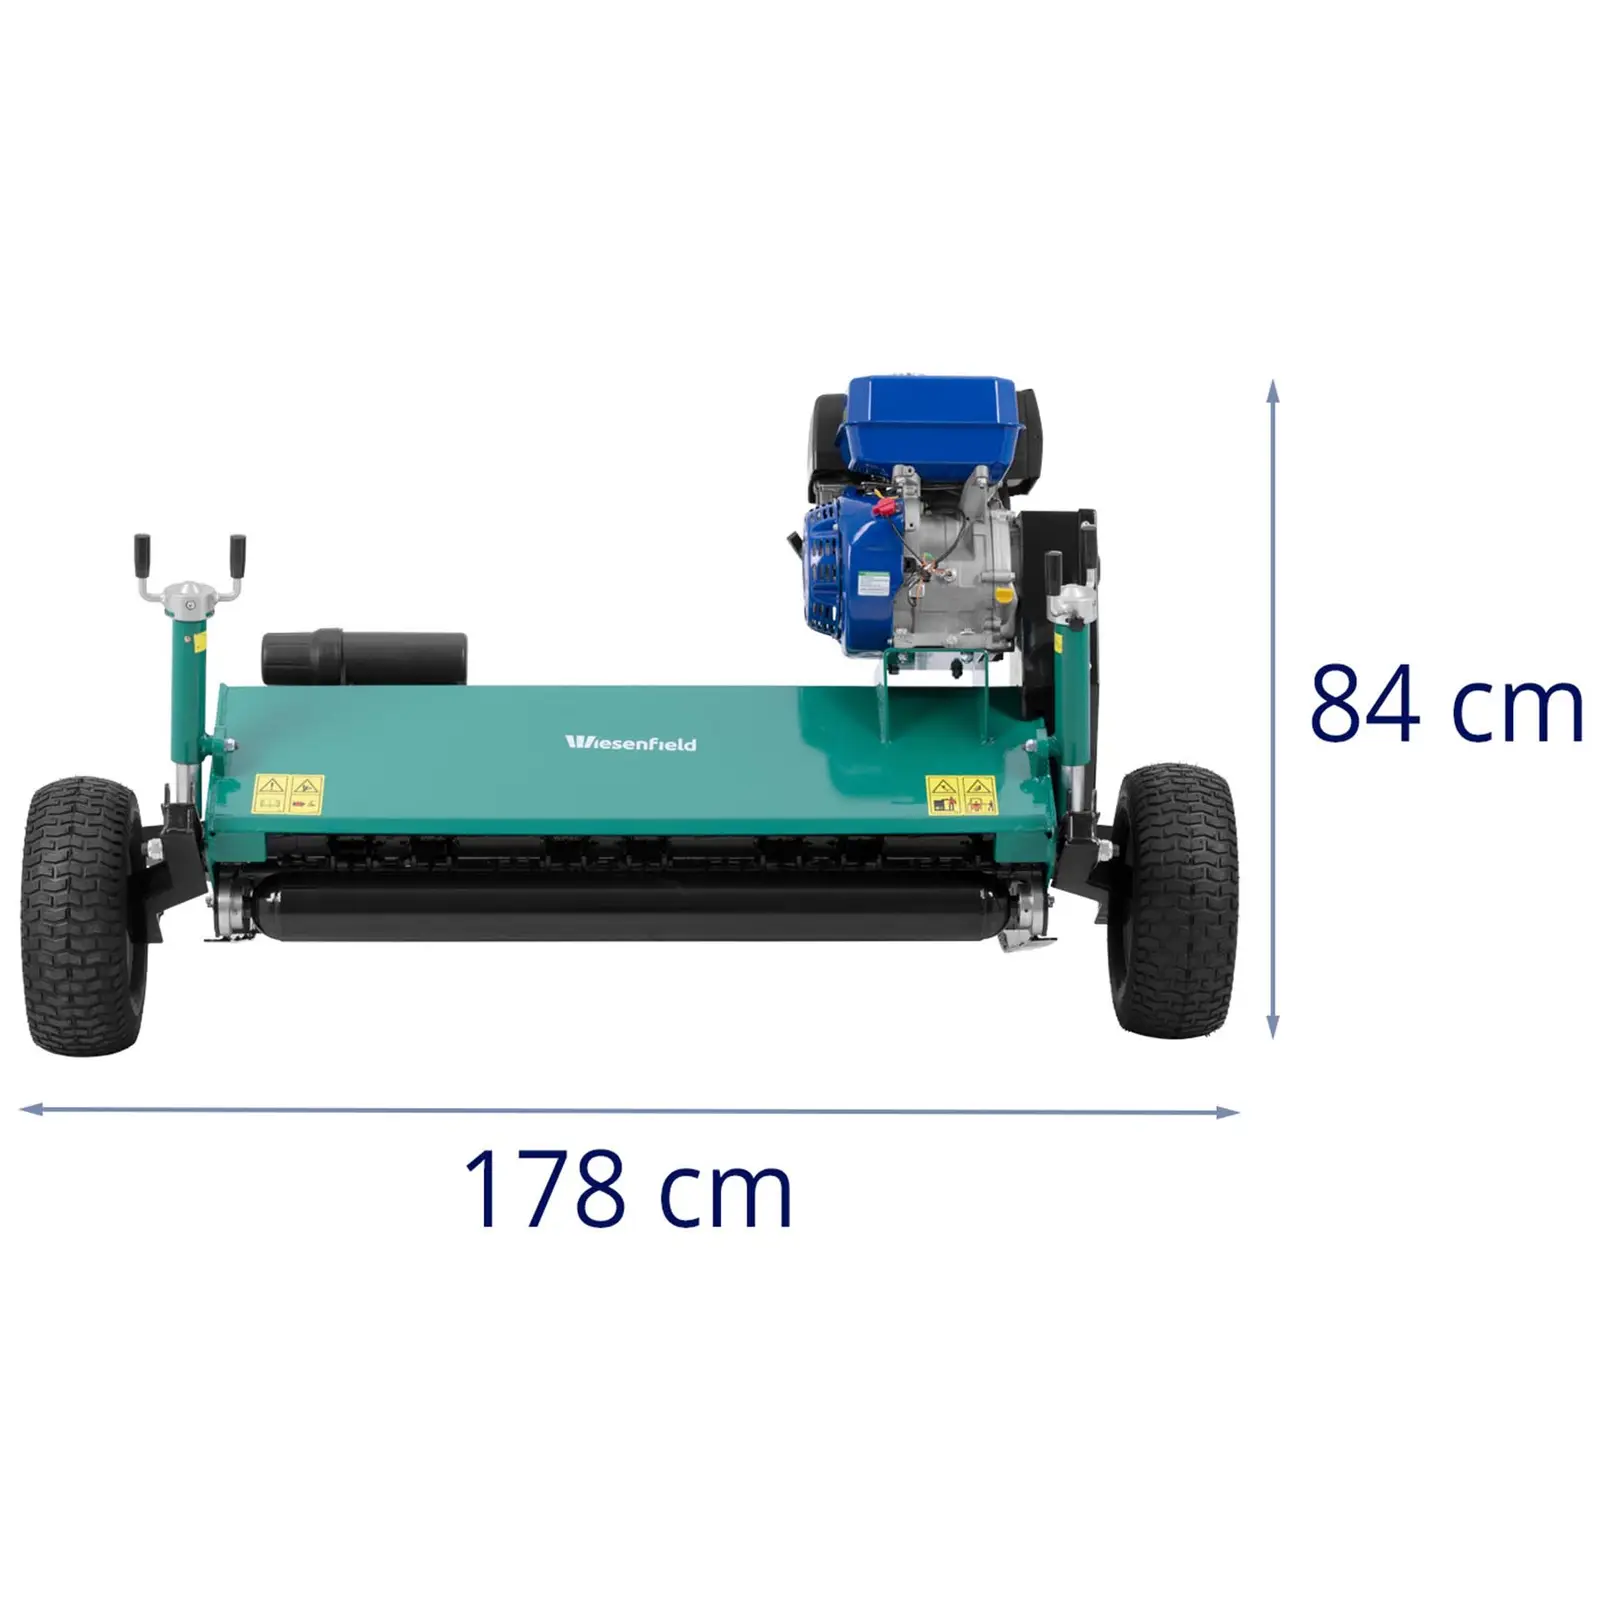 Slaghack – Bensinmotor - 10 kW - Släpvagnskoppling + kulhuvud (Ø 80 mm) - 1200 mm bredd